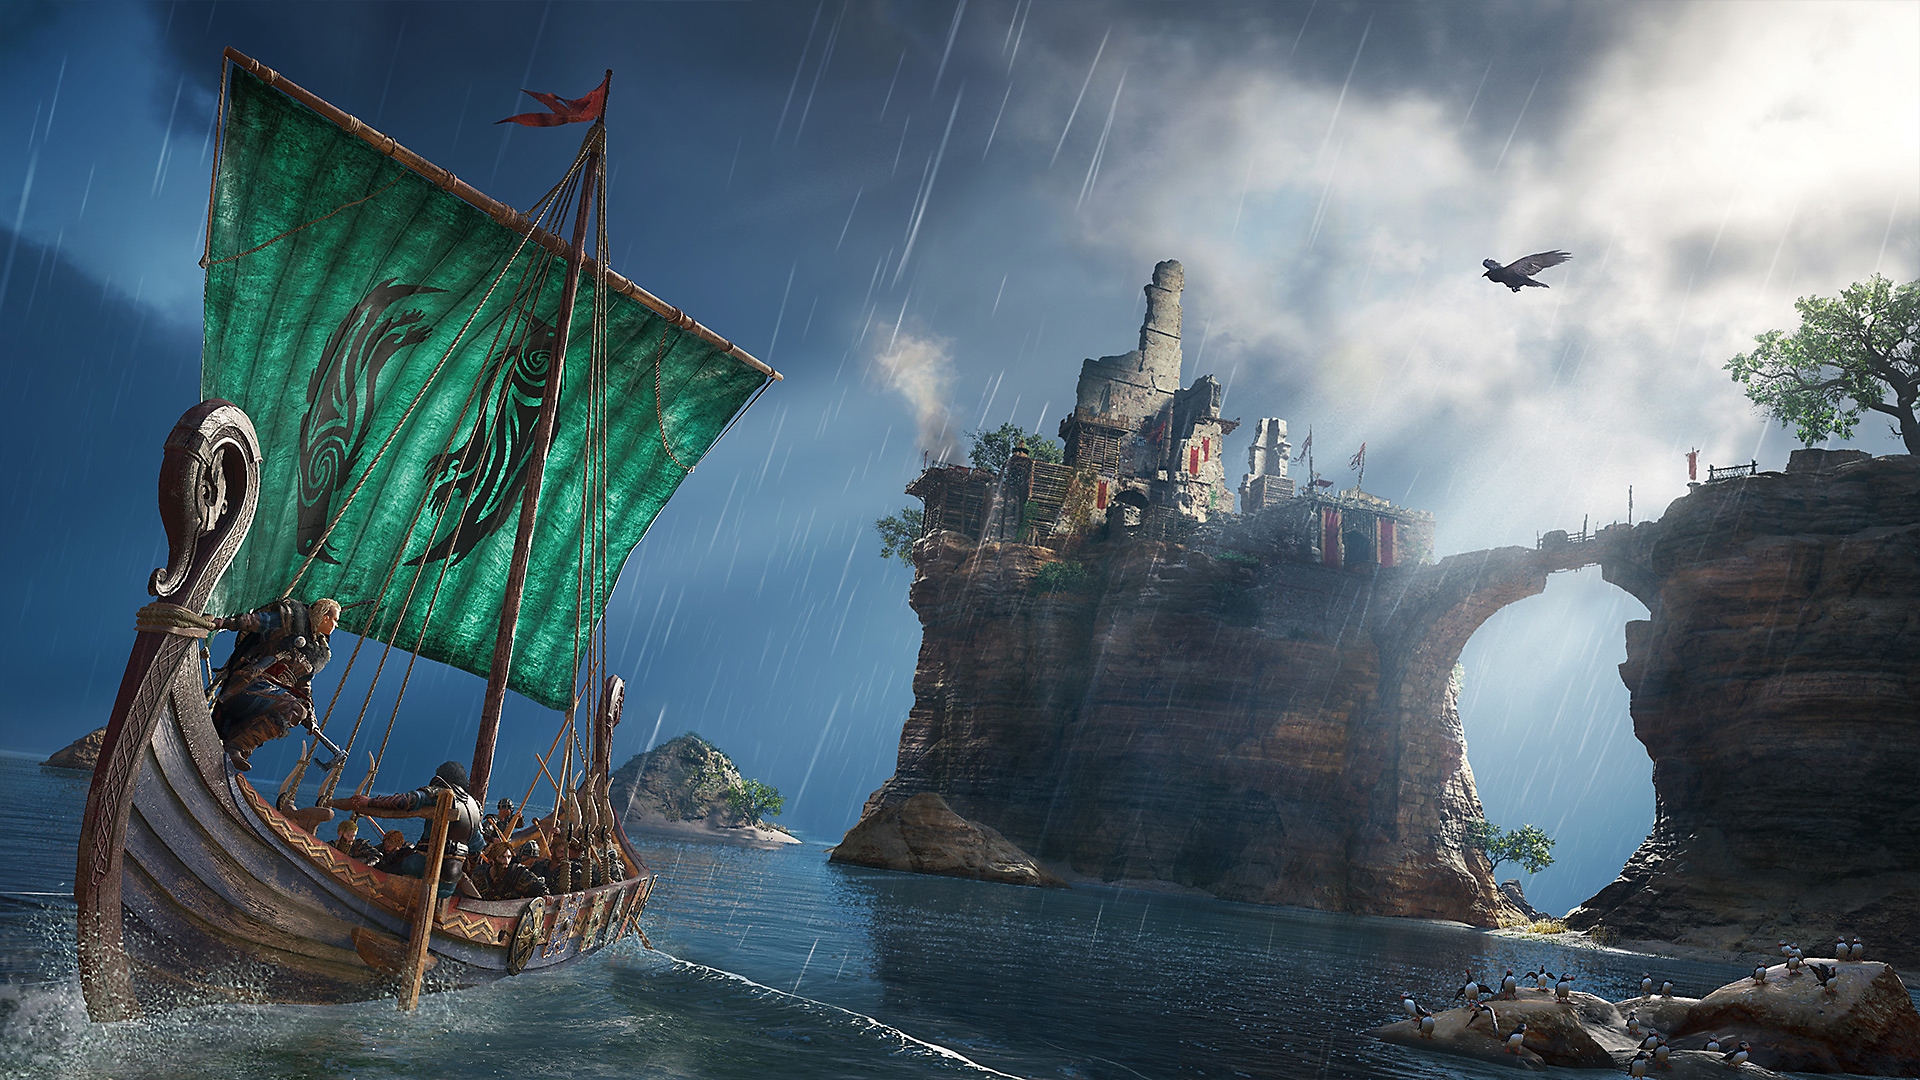 لقطة شاشة للعبة Assassin's Creed Valhalla تظهر فيها شخصية على سفينة الفايكينج تبحث عن مبانٍ في جزيرة مرتفعة